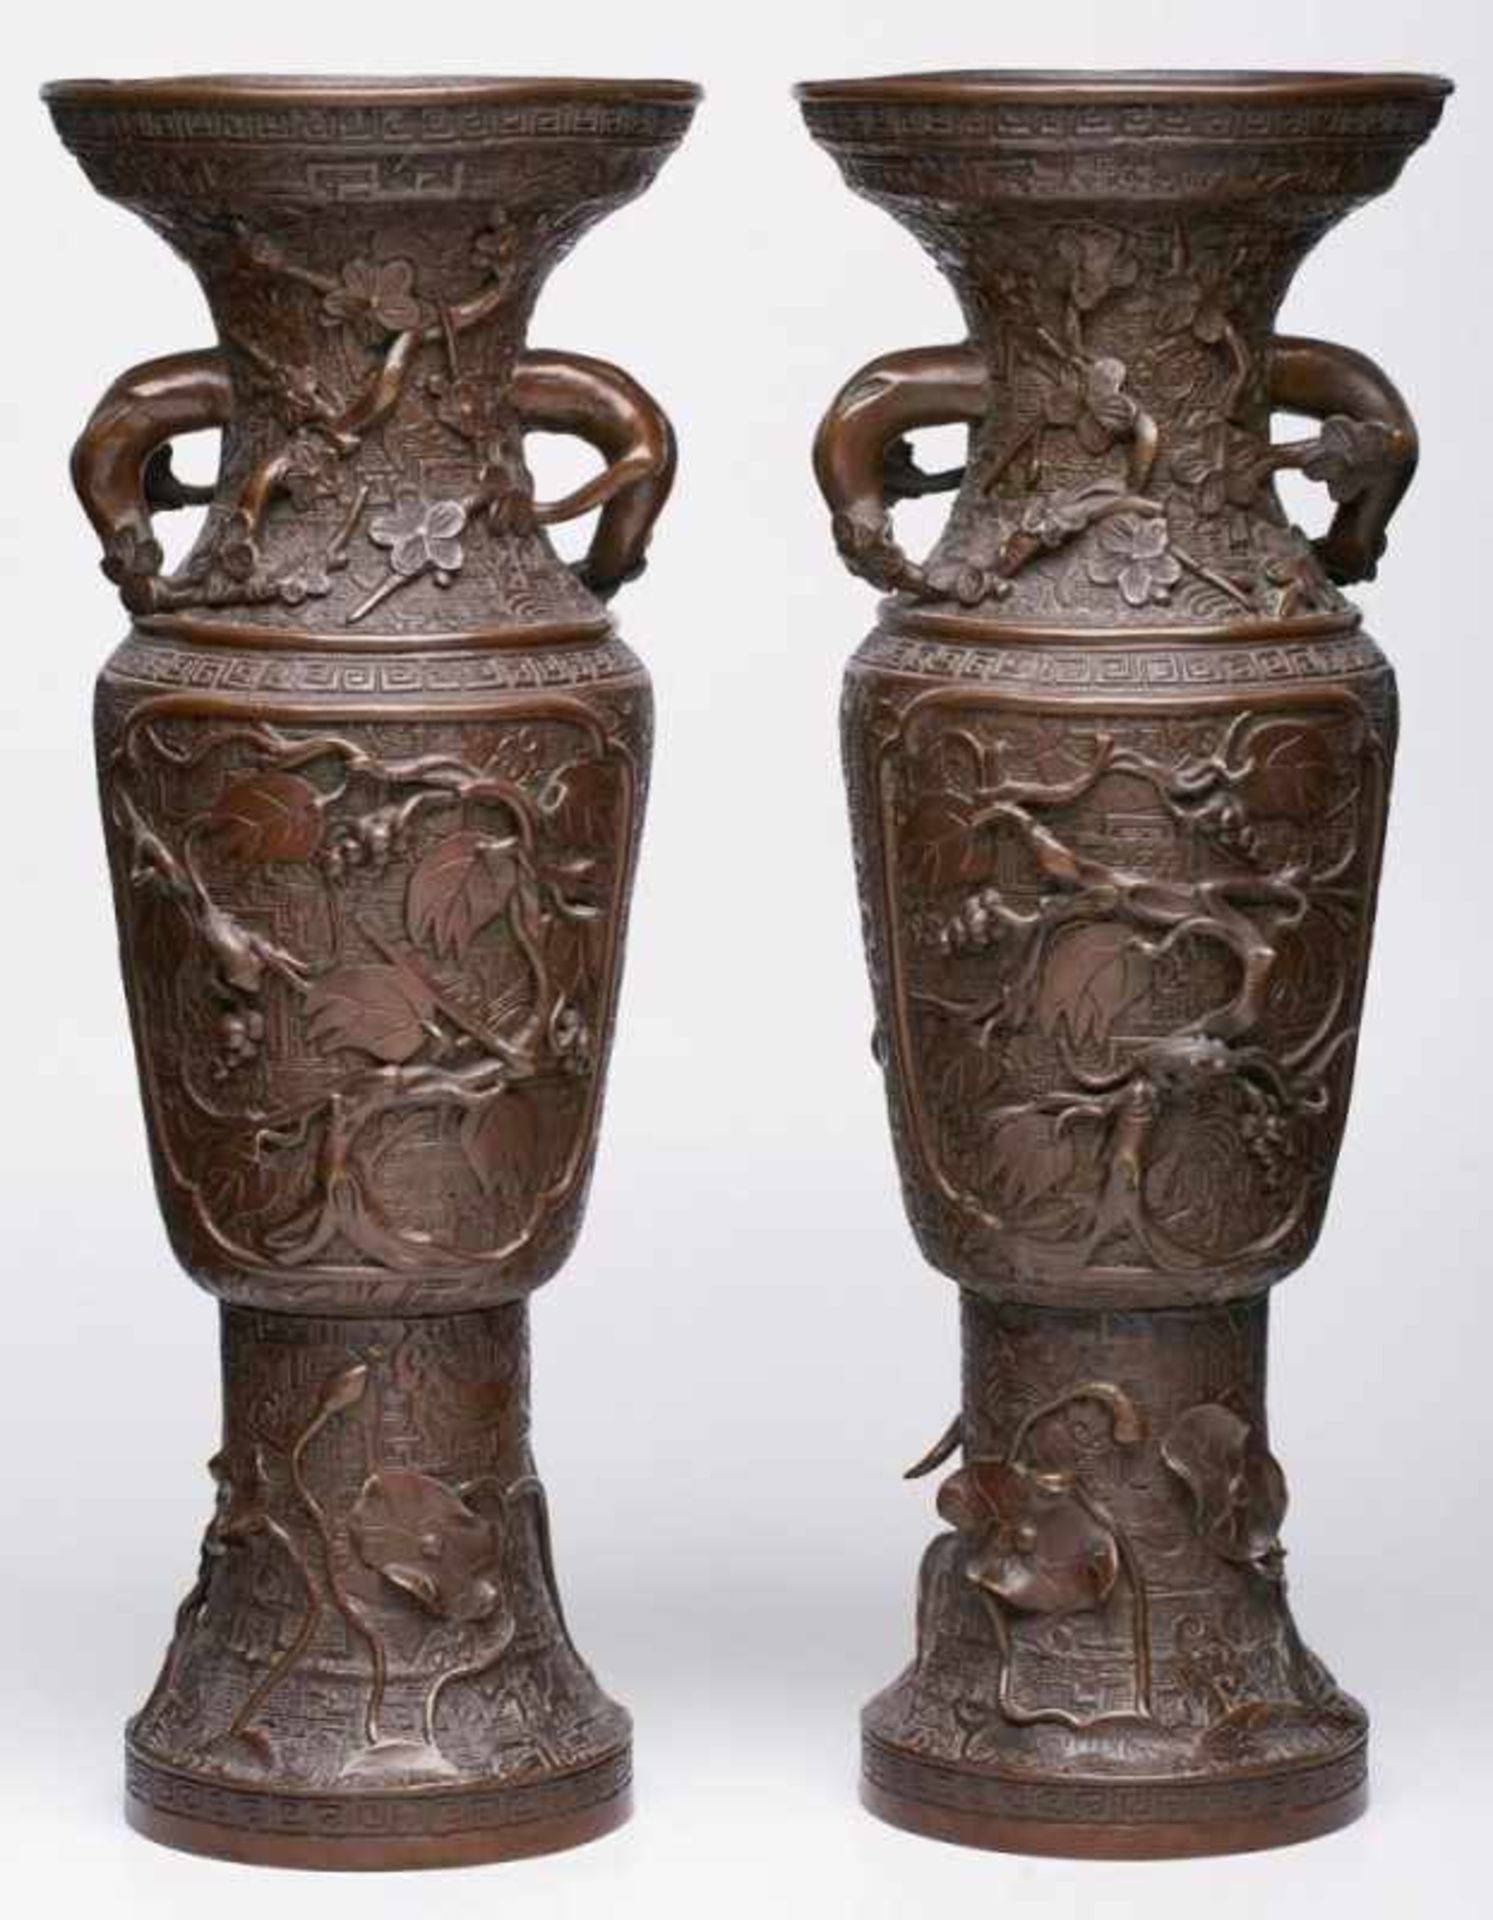 Paar Vasen mit Floraldekor,China wohl Anf. 20. Jh. Bronze, braun patiniert. Schlanke Form m.